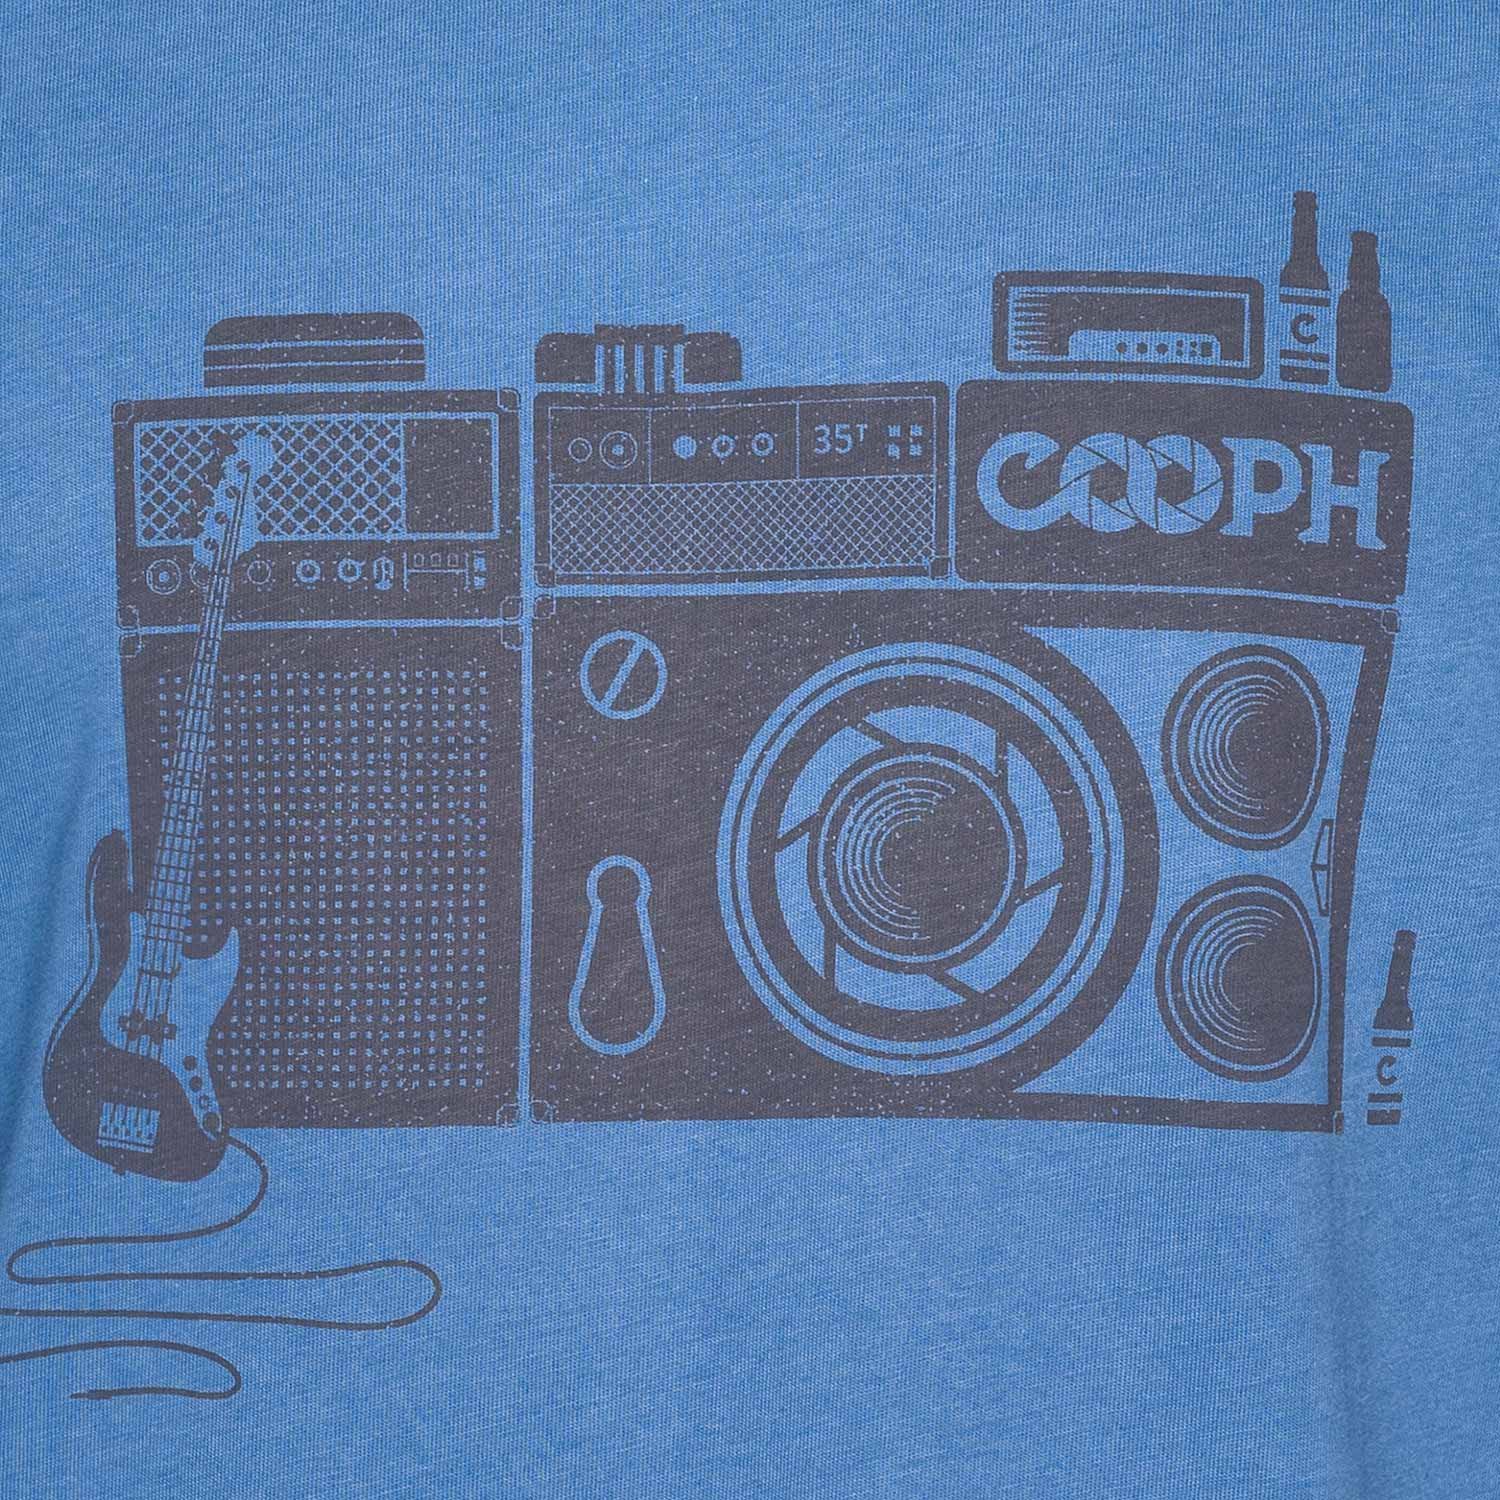 COOPH T-shirt Rocktographer - Bleu royal